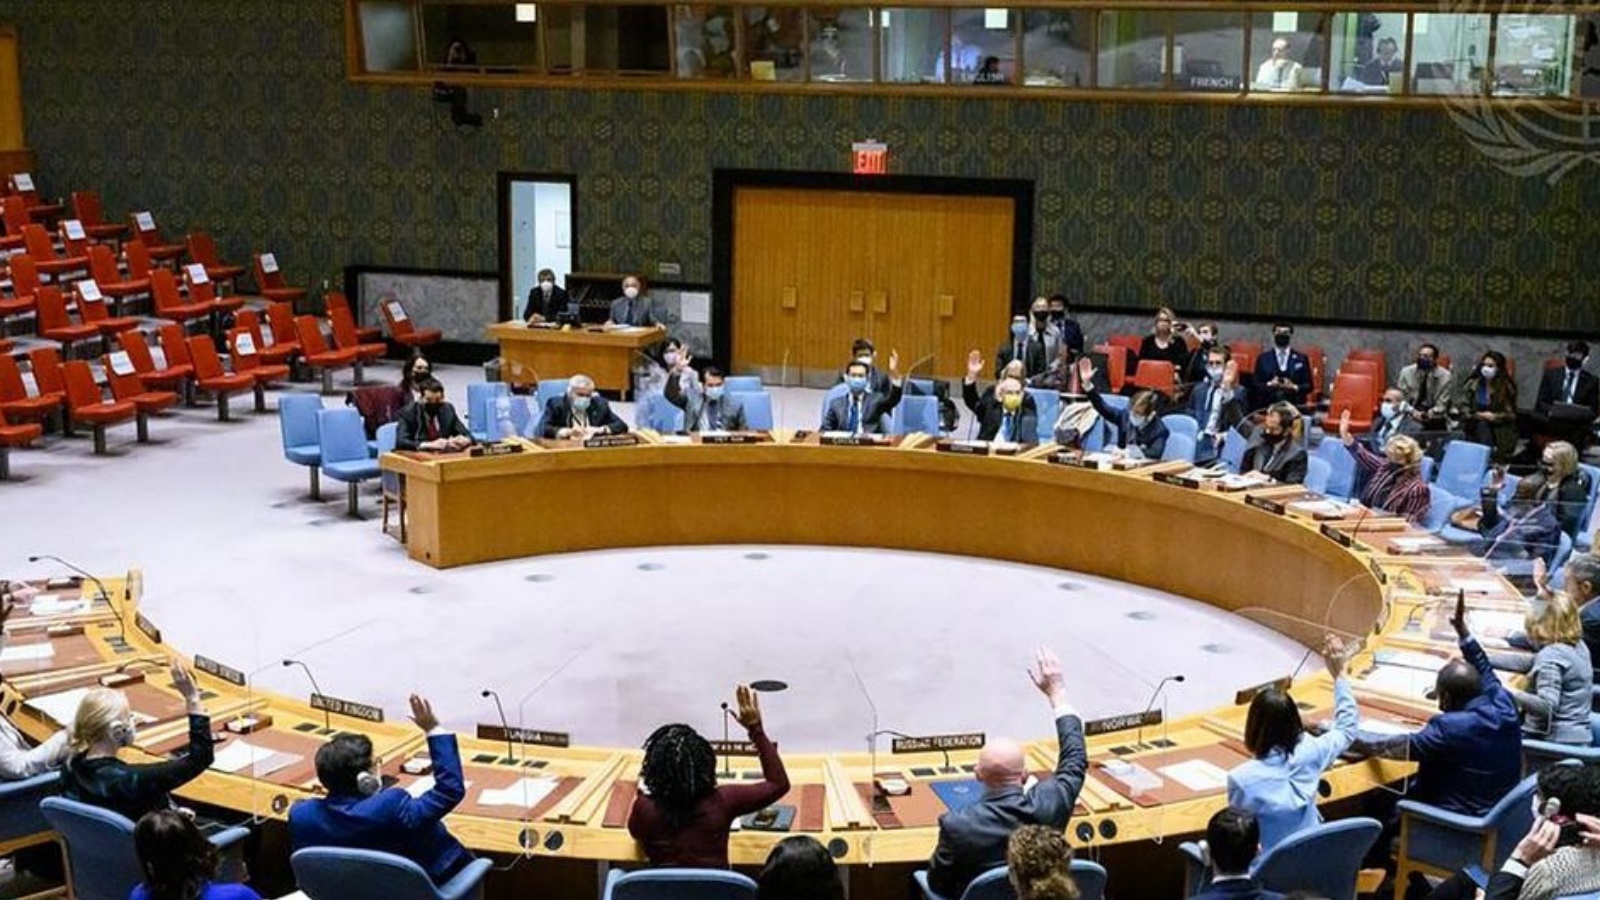 مجلس الأمن الدولي دعا مساء الخميس لسرعة تشكيل حكومة عراقية جديدة بشكل سلمي (إعلام الأمم المتحدة)